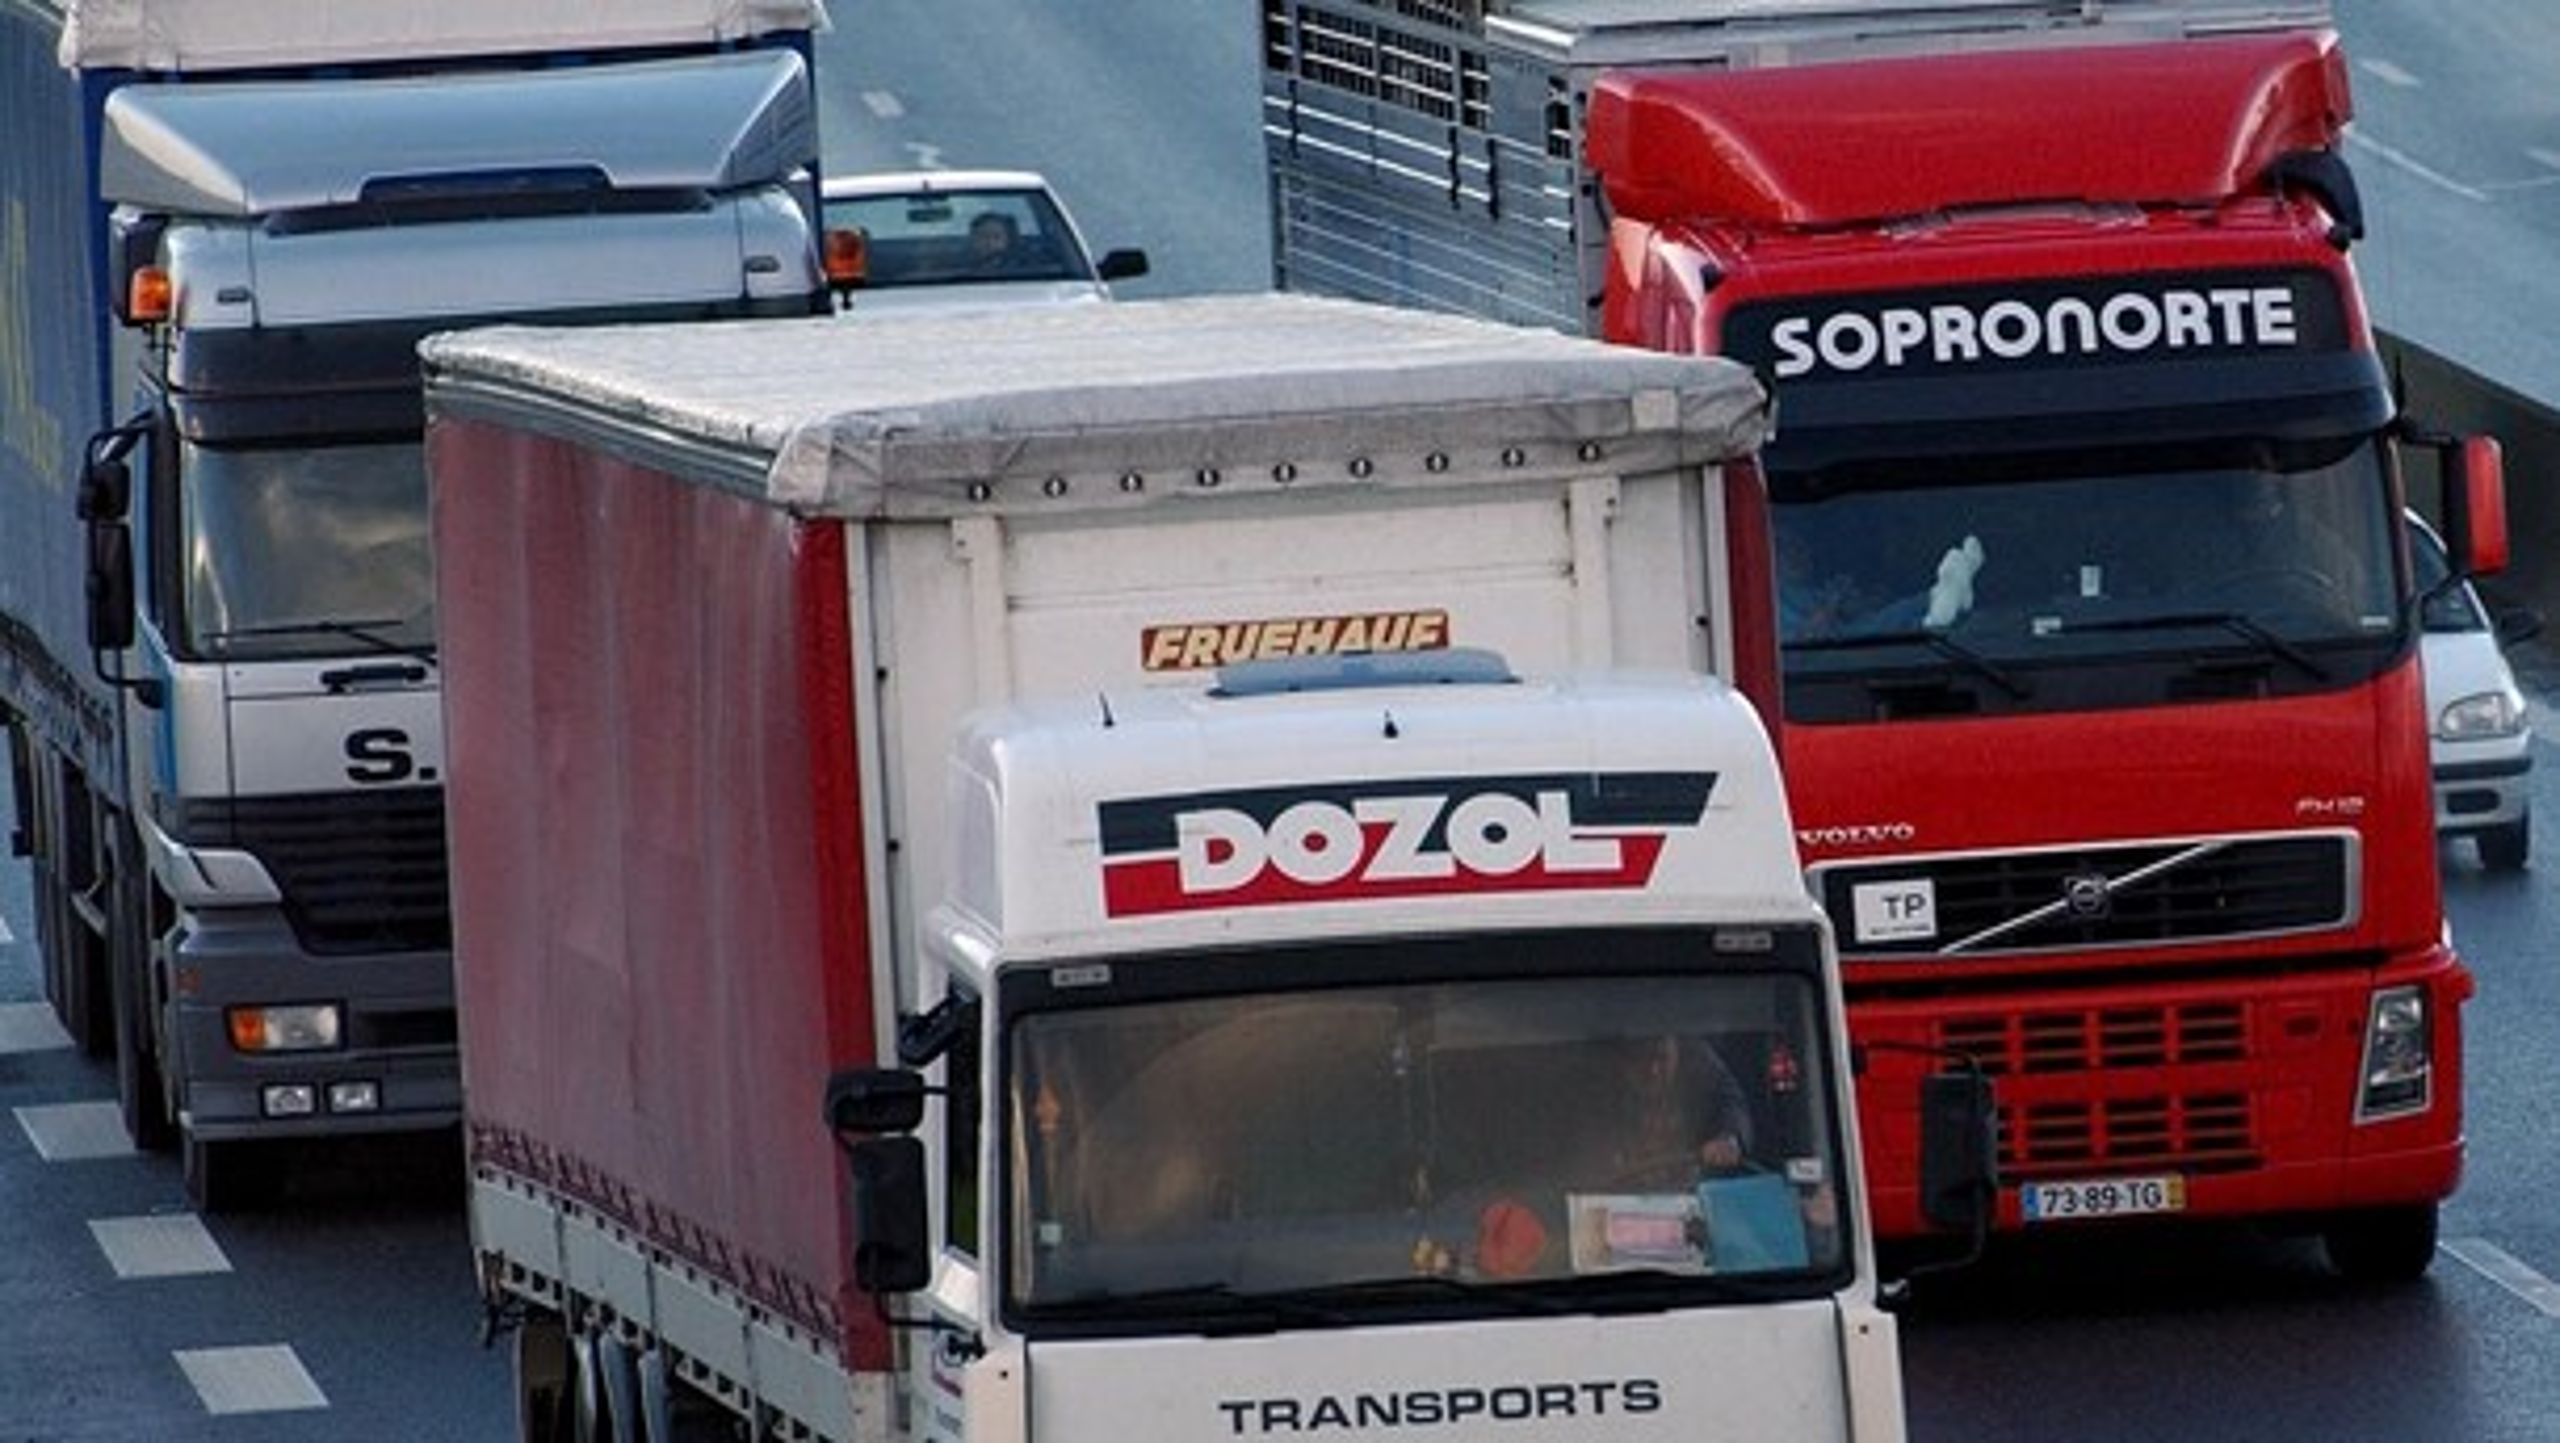 Transportbranchen skal have særskilte EU-regler, mener ITD.